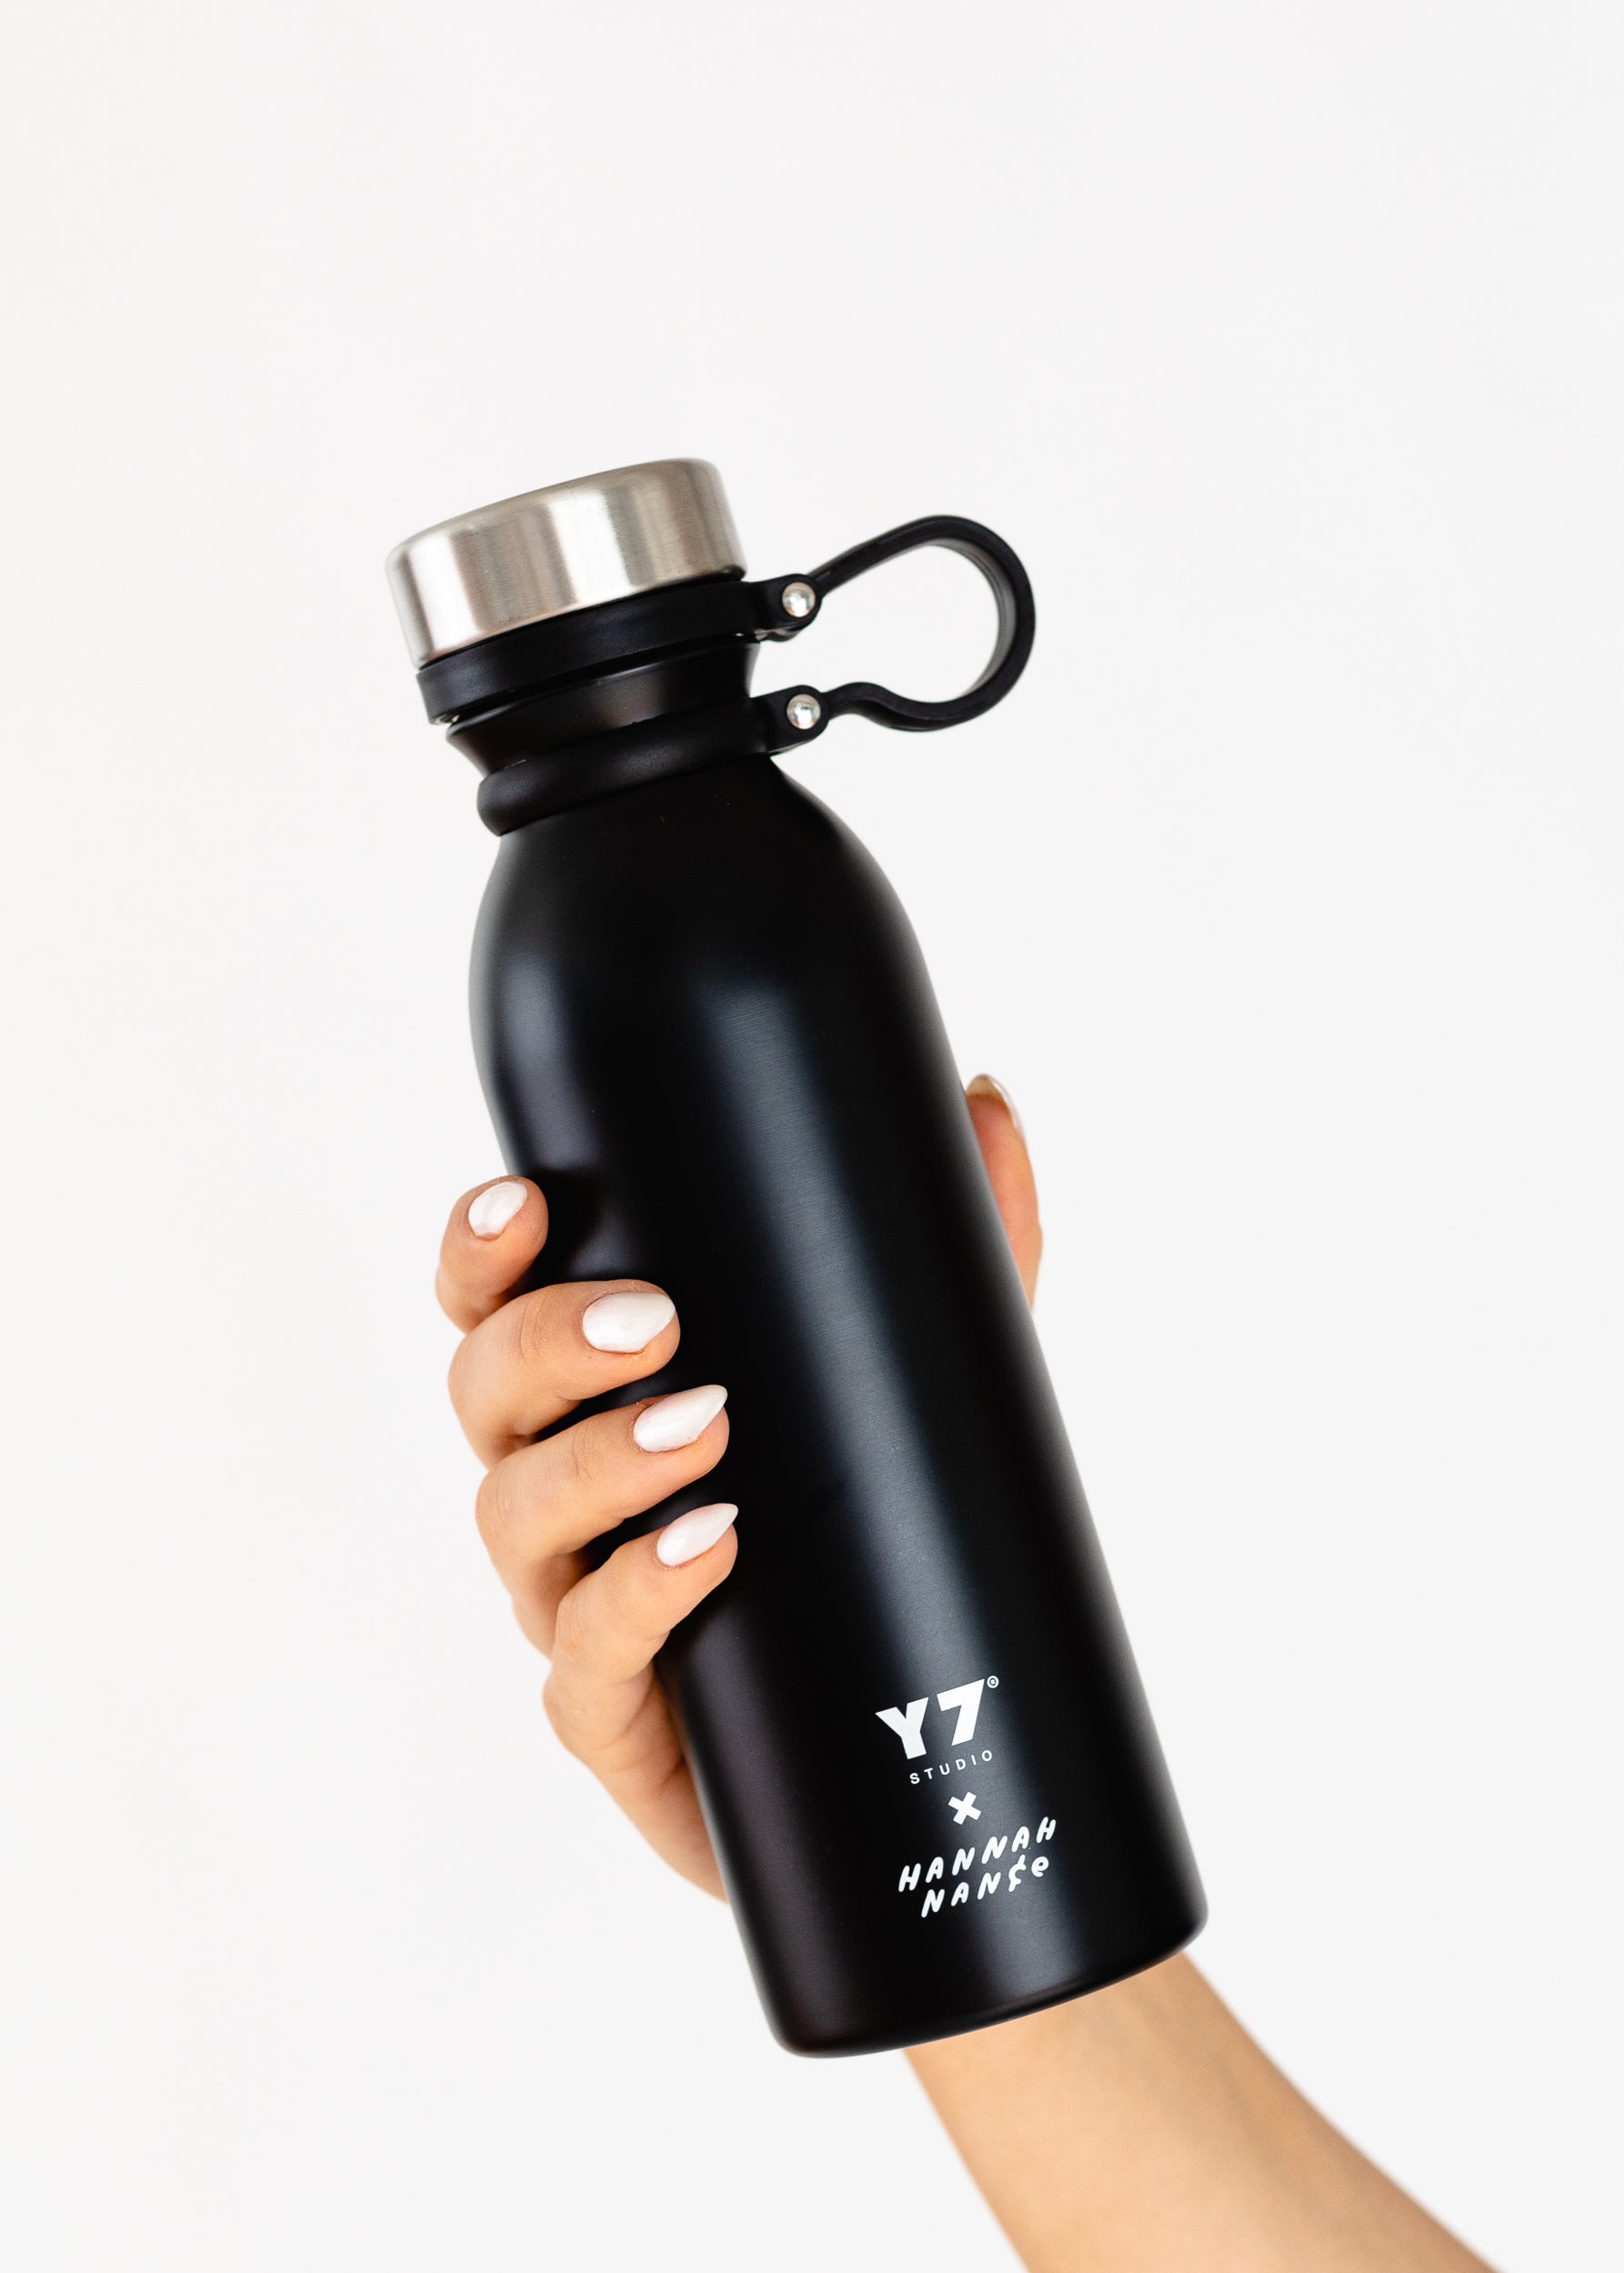 Namaste LA Water bottle